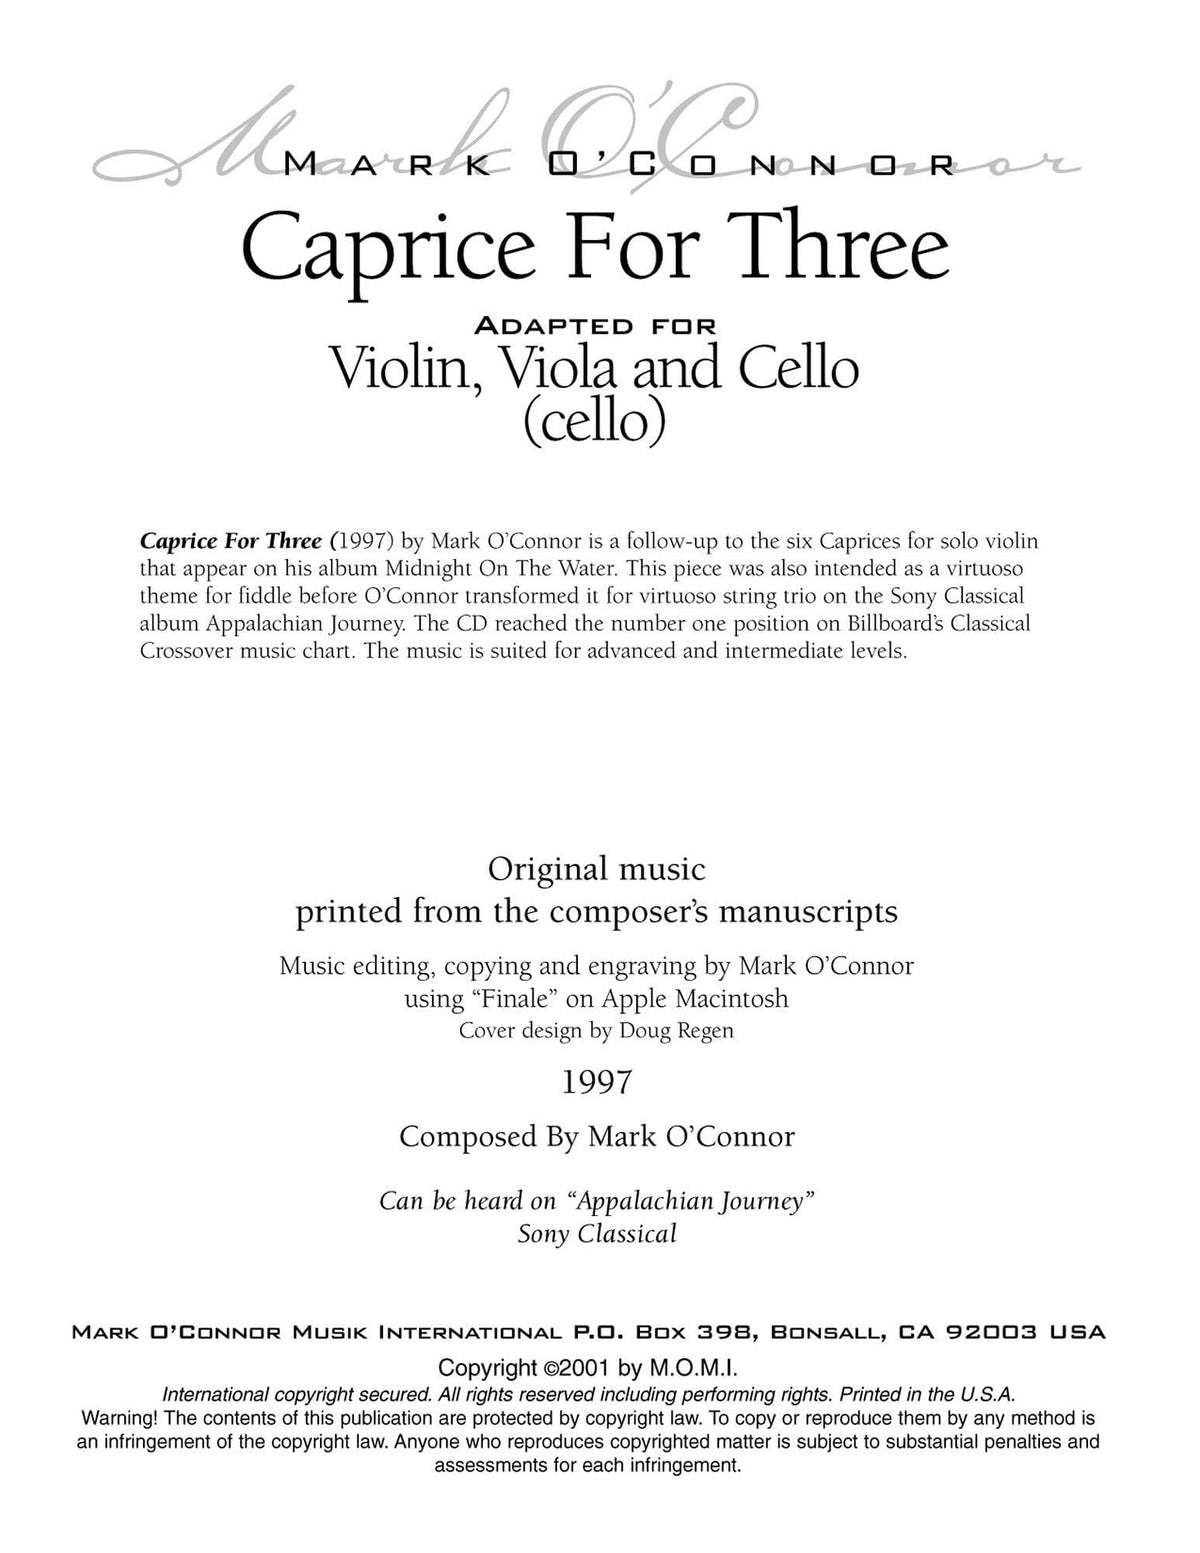 O'Connor, Mark - Caprice for Three for Violin, Viola, and Cello - Cello - Digital Download